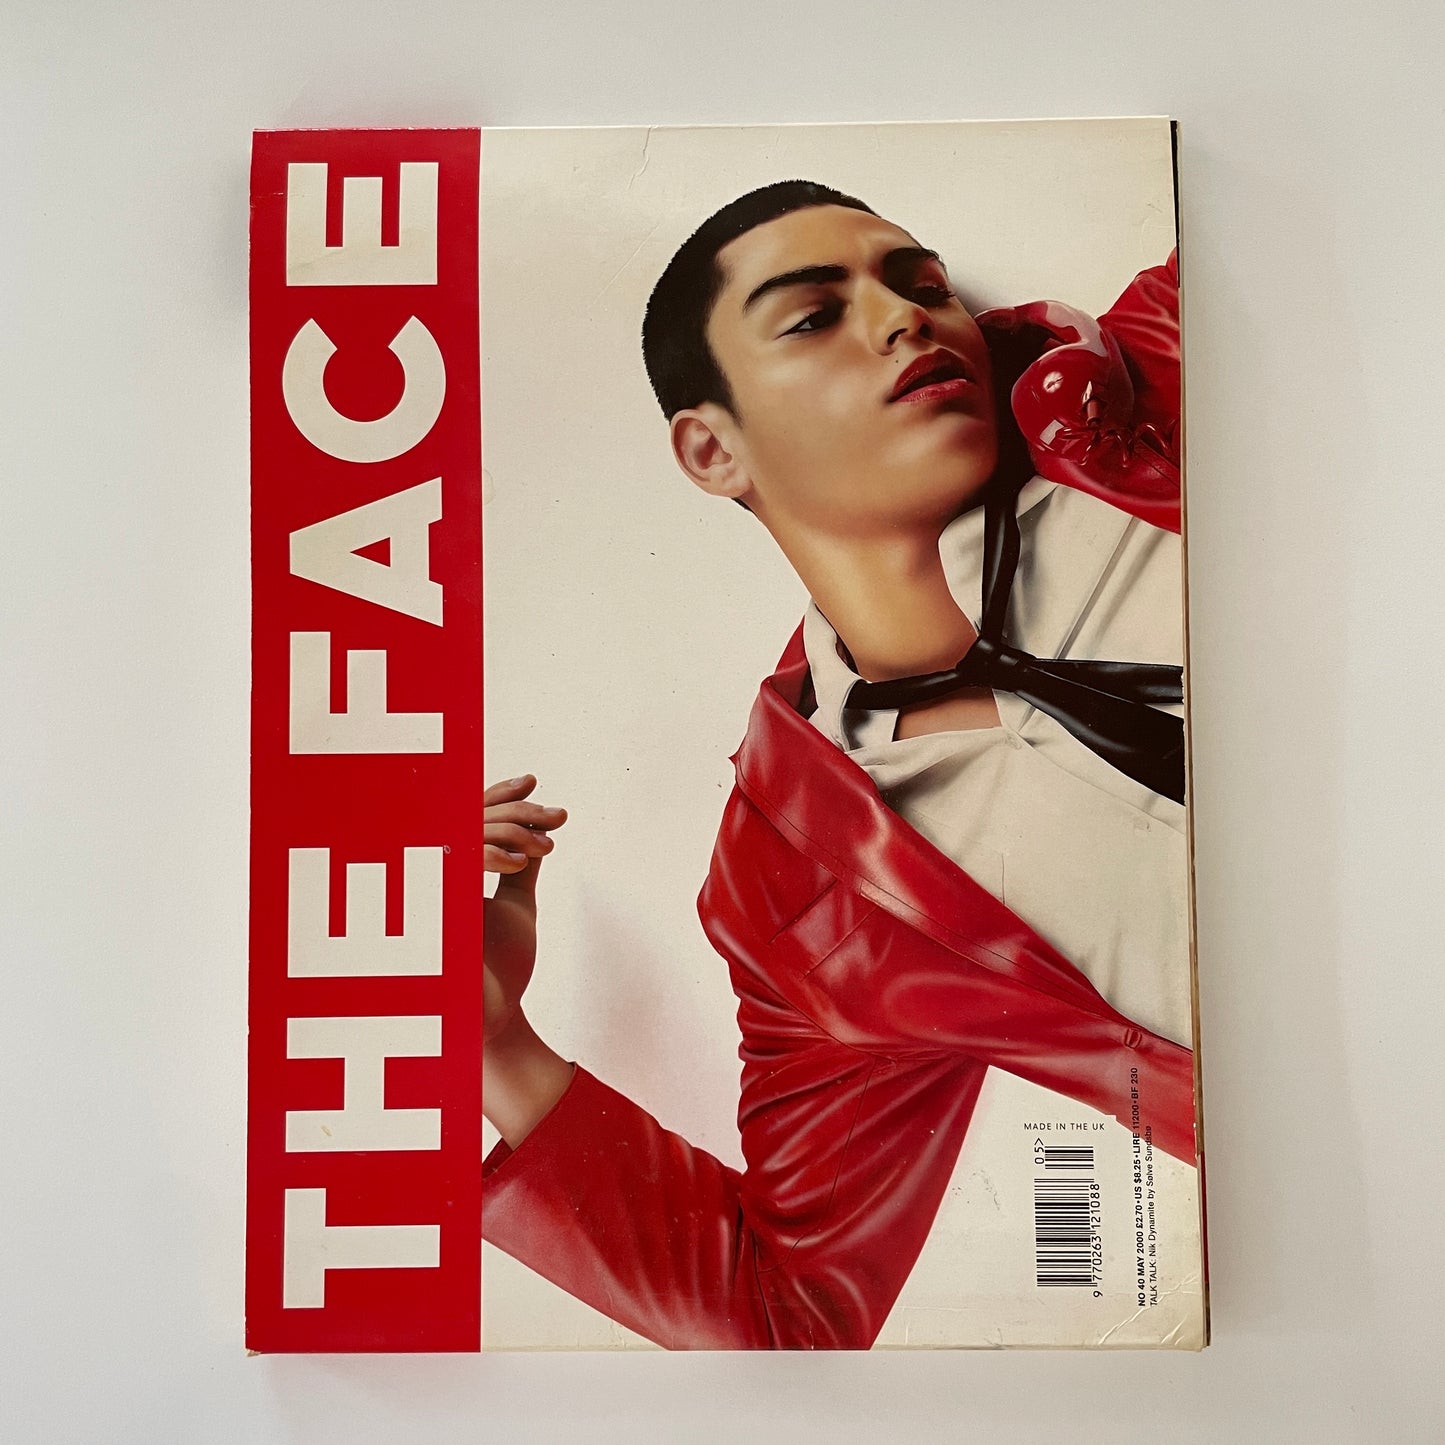 The Face No.40 - May 2000